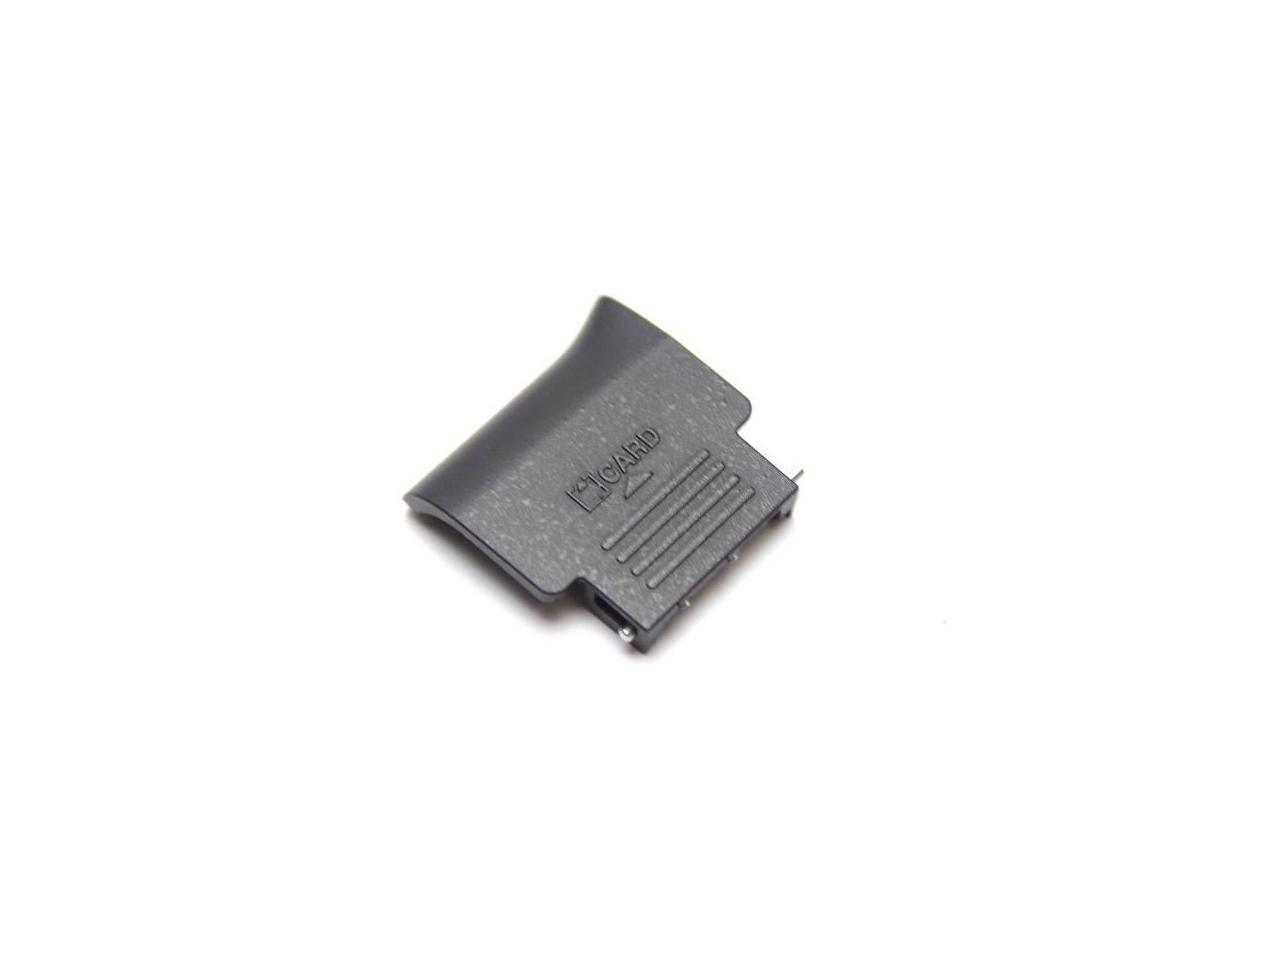 Nikon D3300 SD Memory Card Chamber Door Cover Repair Part USA in-stock 